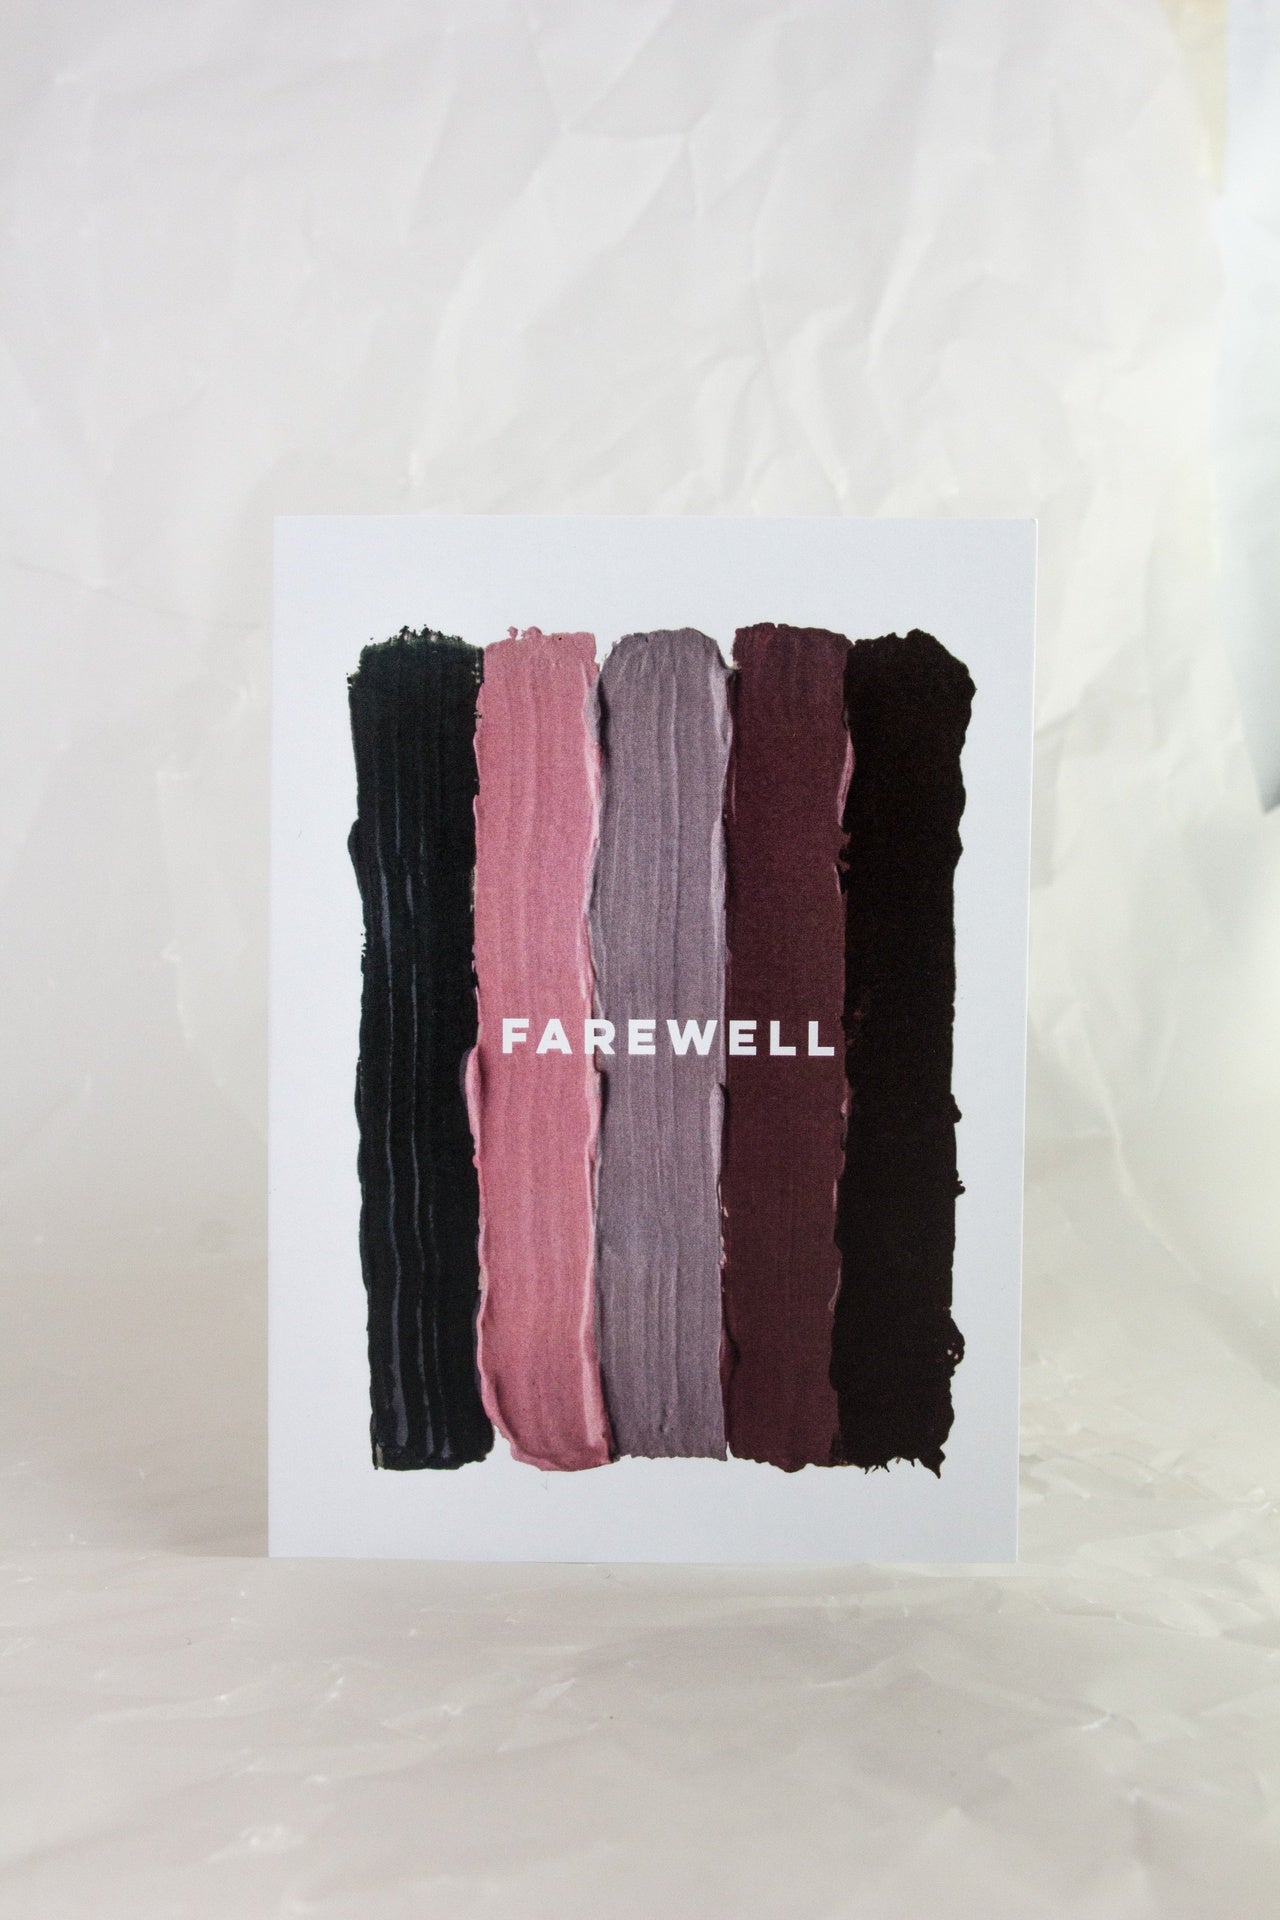 Farewell Paint Card